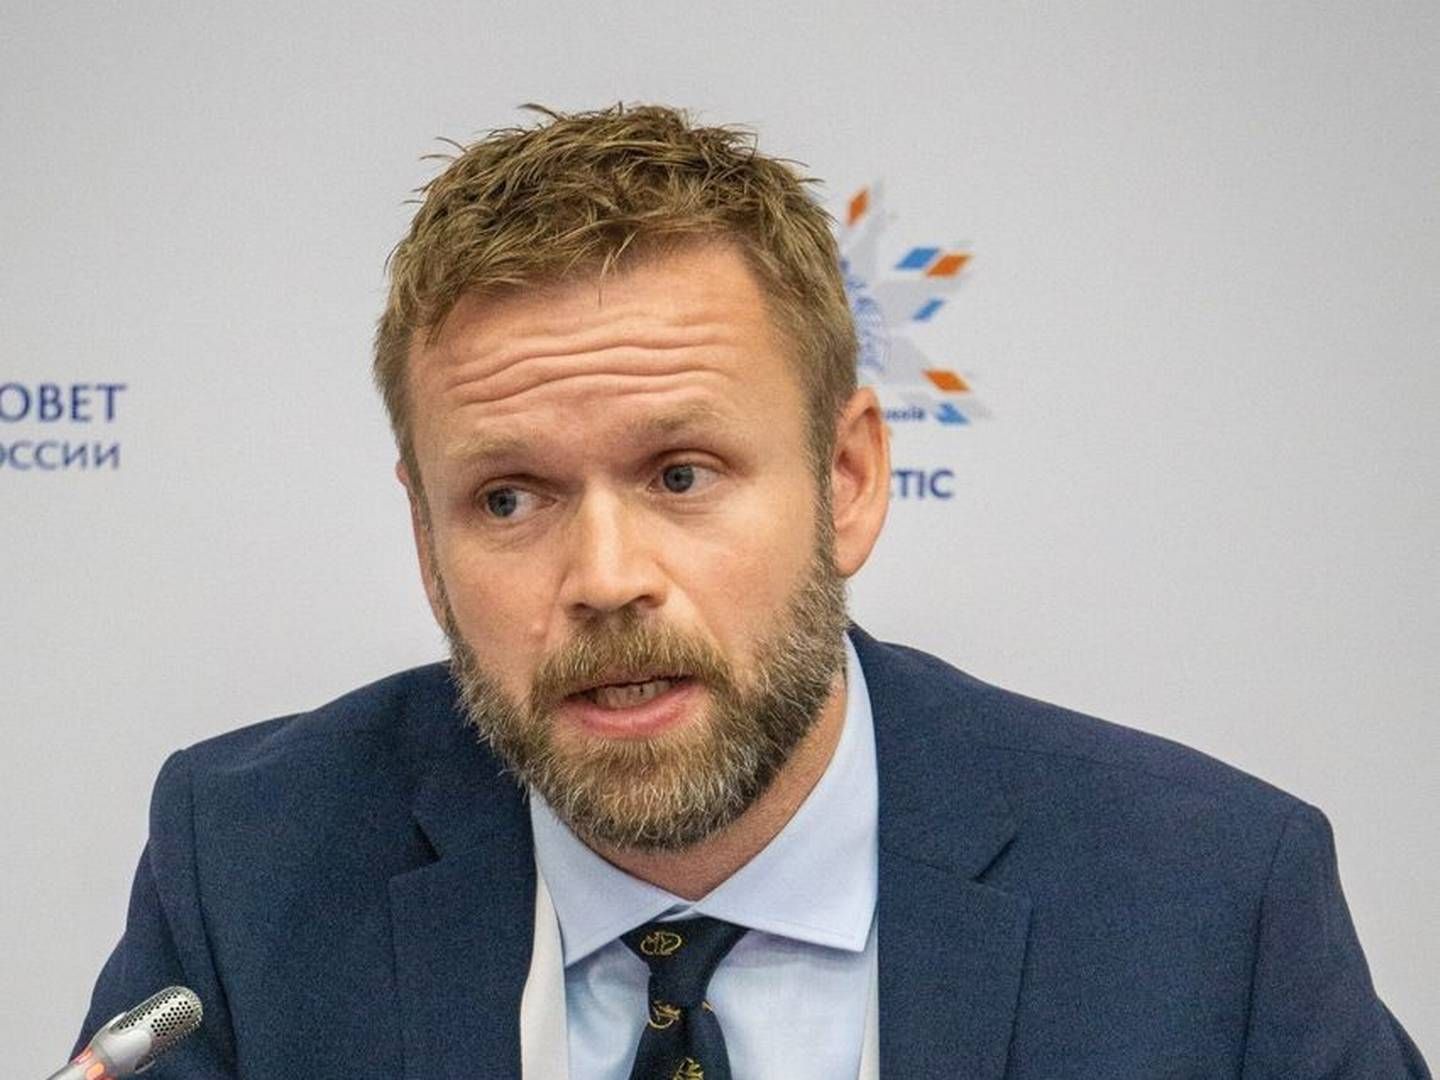 FEMTE ANSATTE: Norsk Kjernekraft har ansatt Øyvind Aas-Hansen. Han kommer fra Direktoratet for strålevern og atomsikkerhet (DSA). | Foto: Norsk Kjernekraft